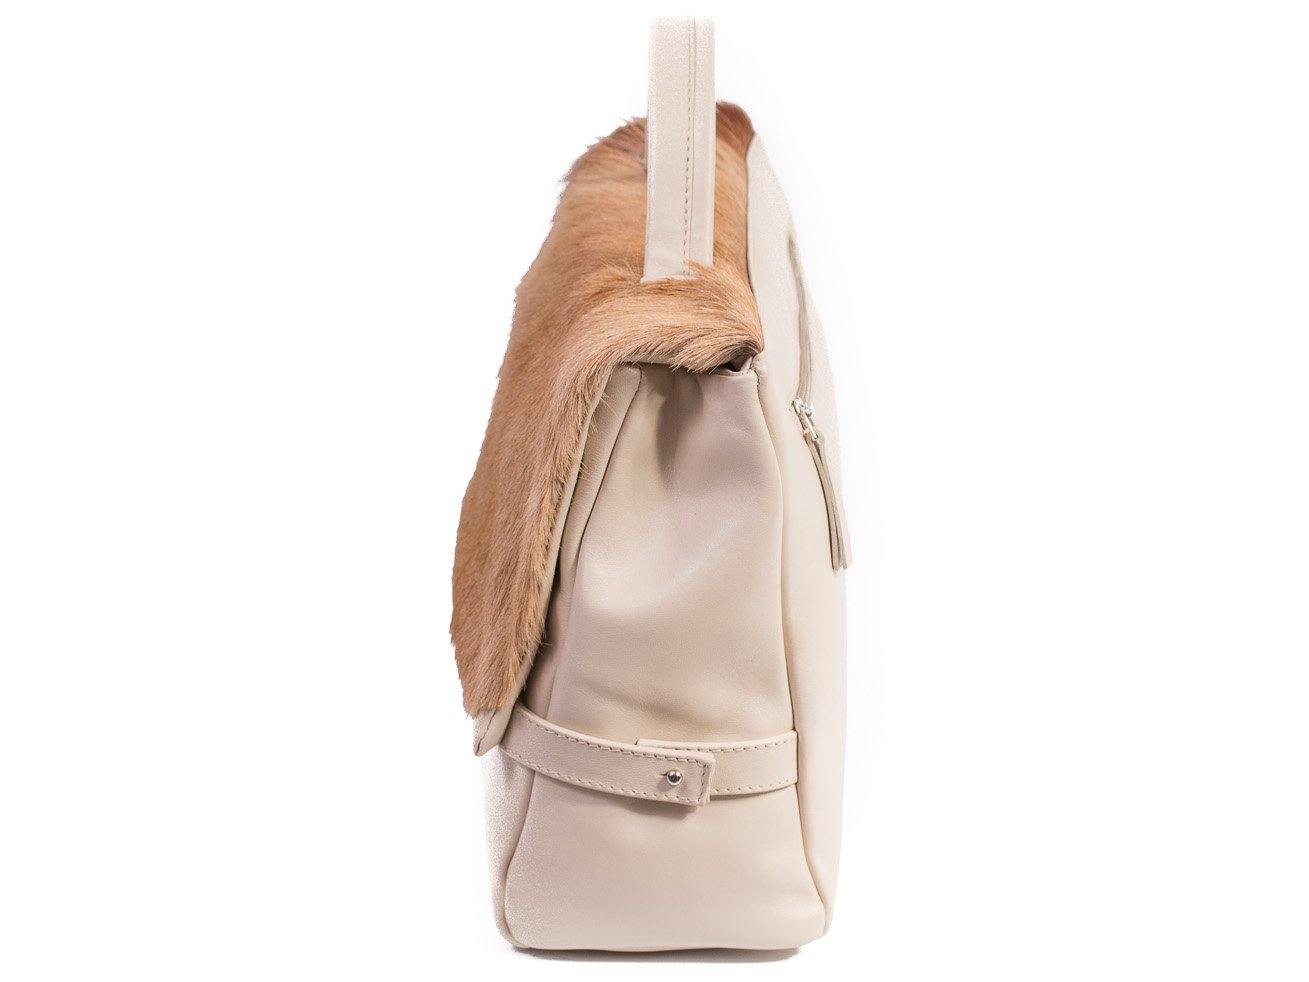 sherene melinda springbok hair-on-hide natural leather smith tote bag Stripe side